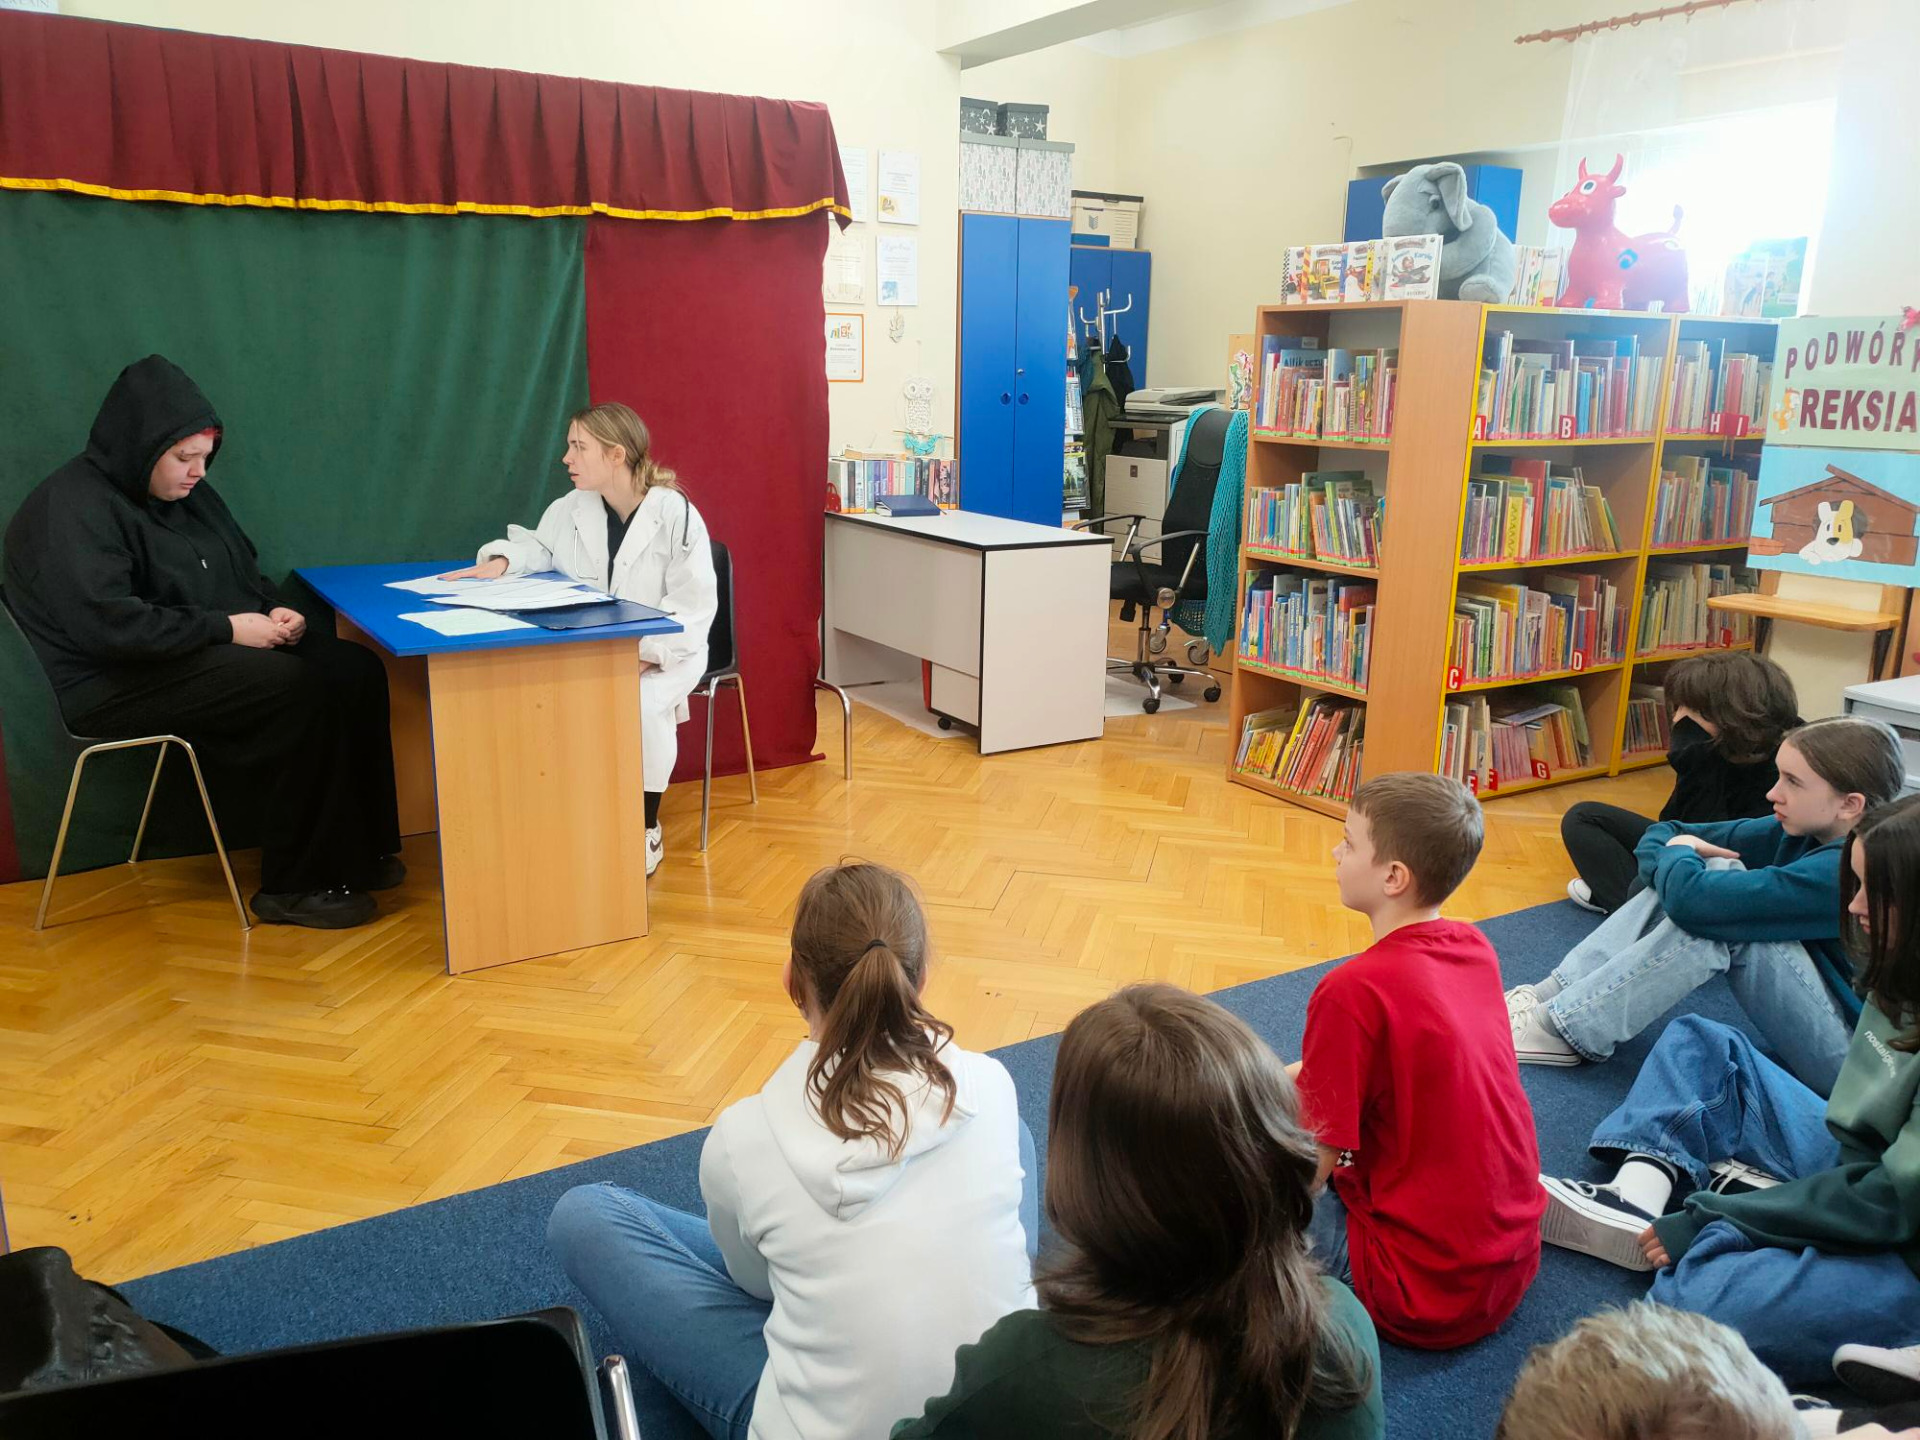 Uczniowie siedzą tyłem w bibliotece, przed nimi dwie postacie przy biurku